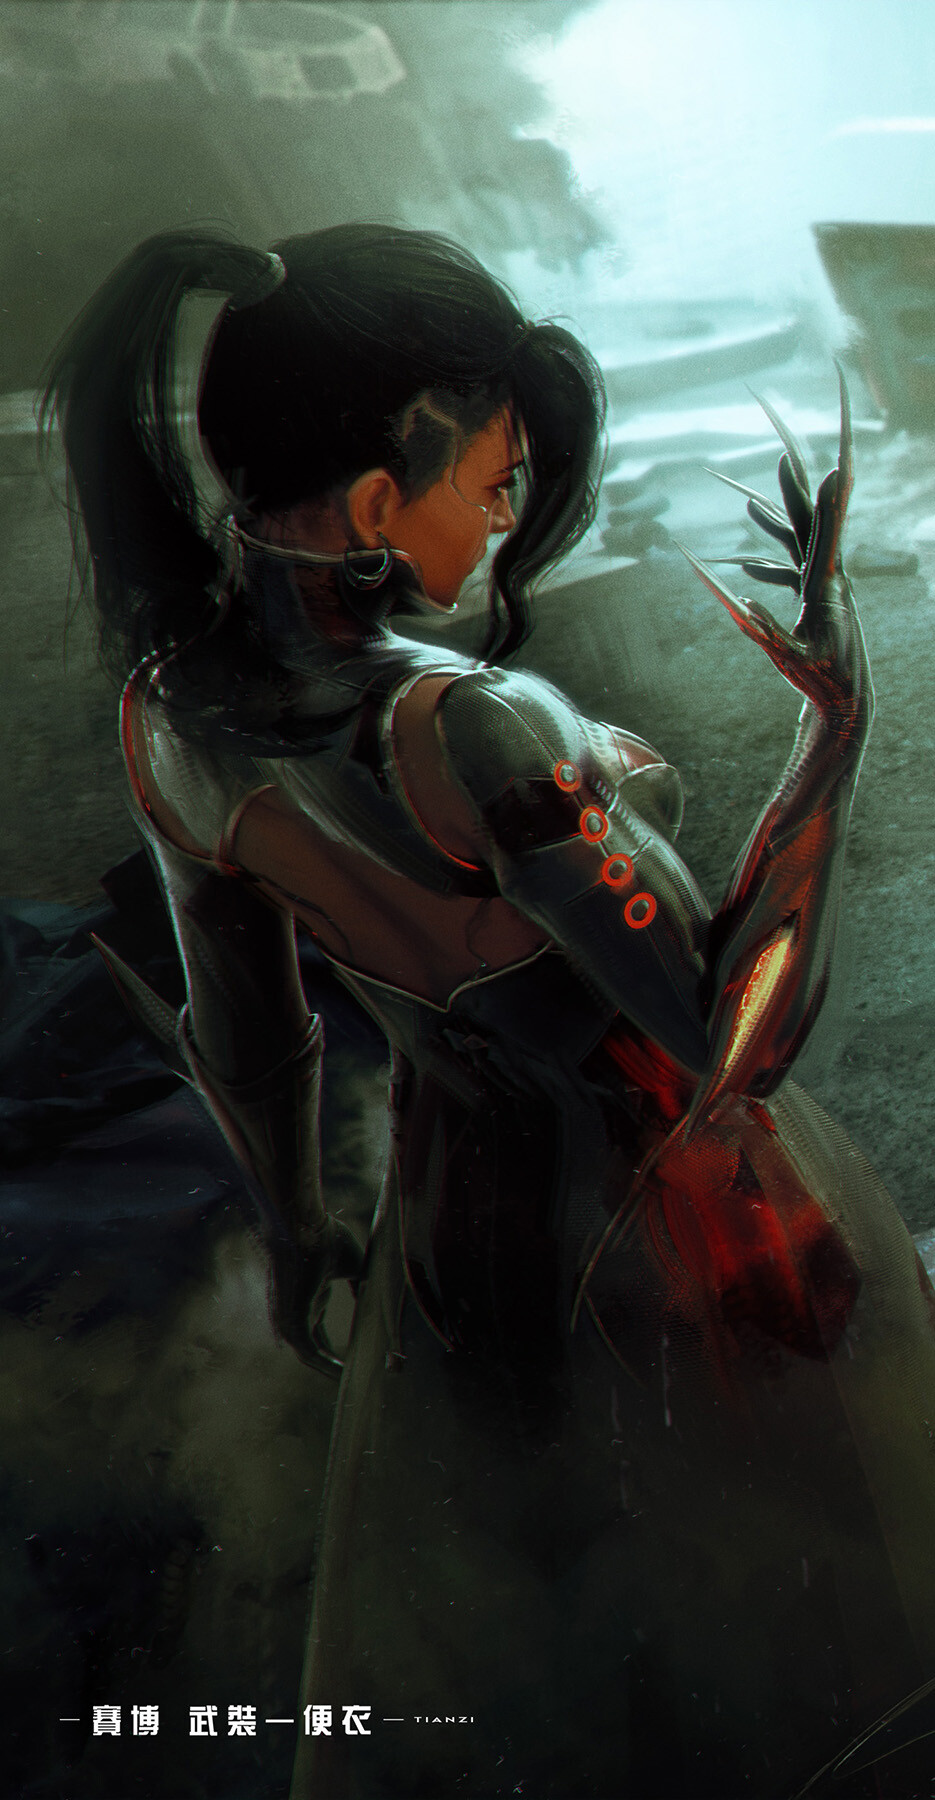 Artwork ArtStation Cyberpunk Science Fiction Science Fiction Women Women Dark Hair Claws Tian Zi Bac 935x1800